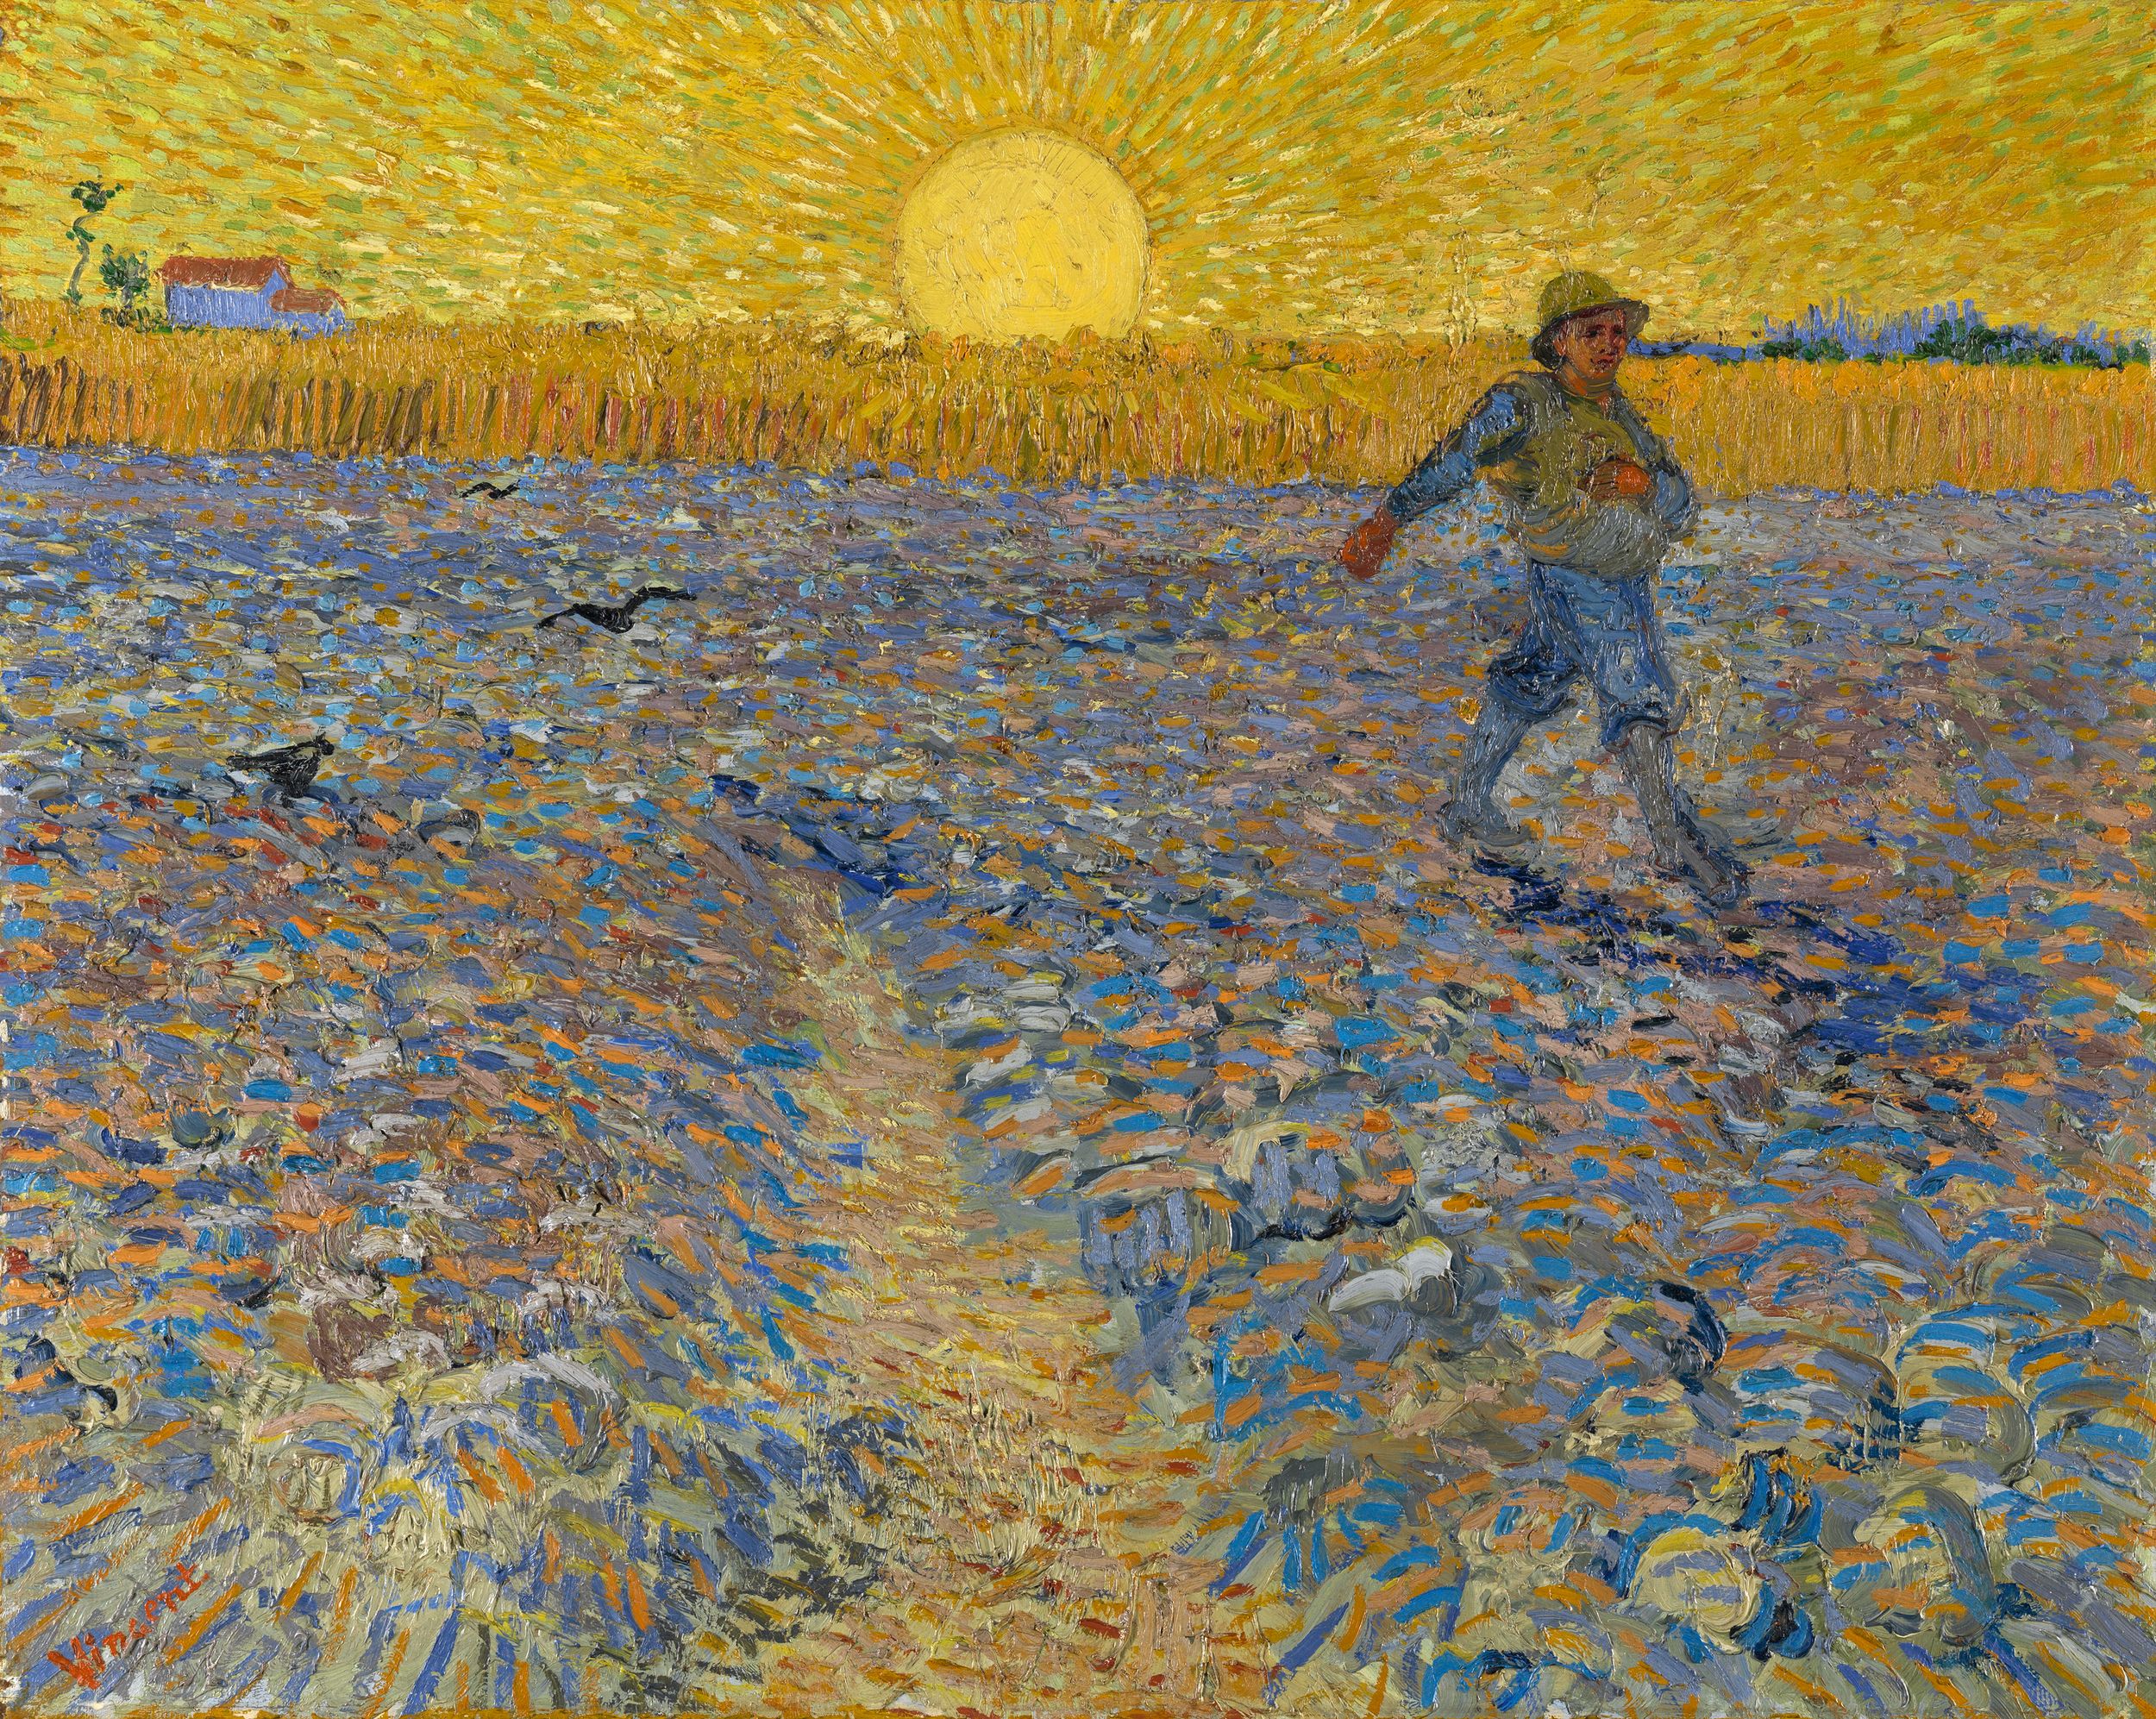 播種者 by Vincent van Gogh - 約1888年6月17-28日 - 64.2 x 80.3 釐米 